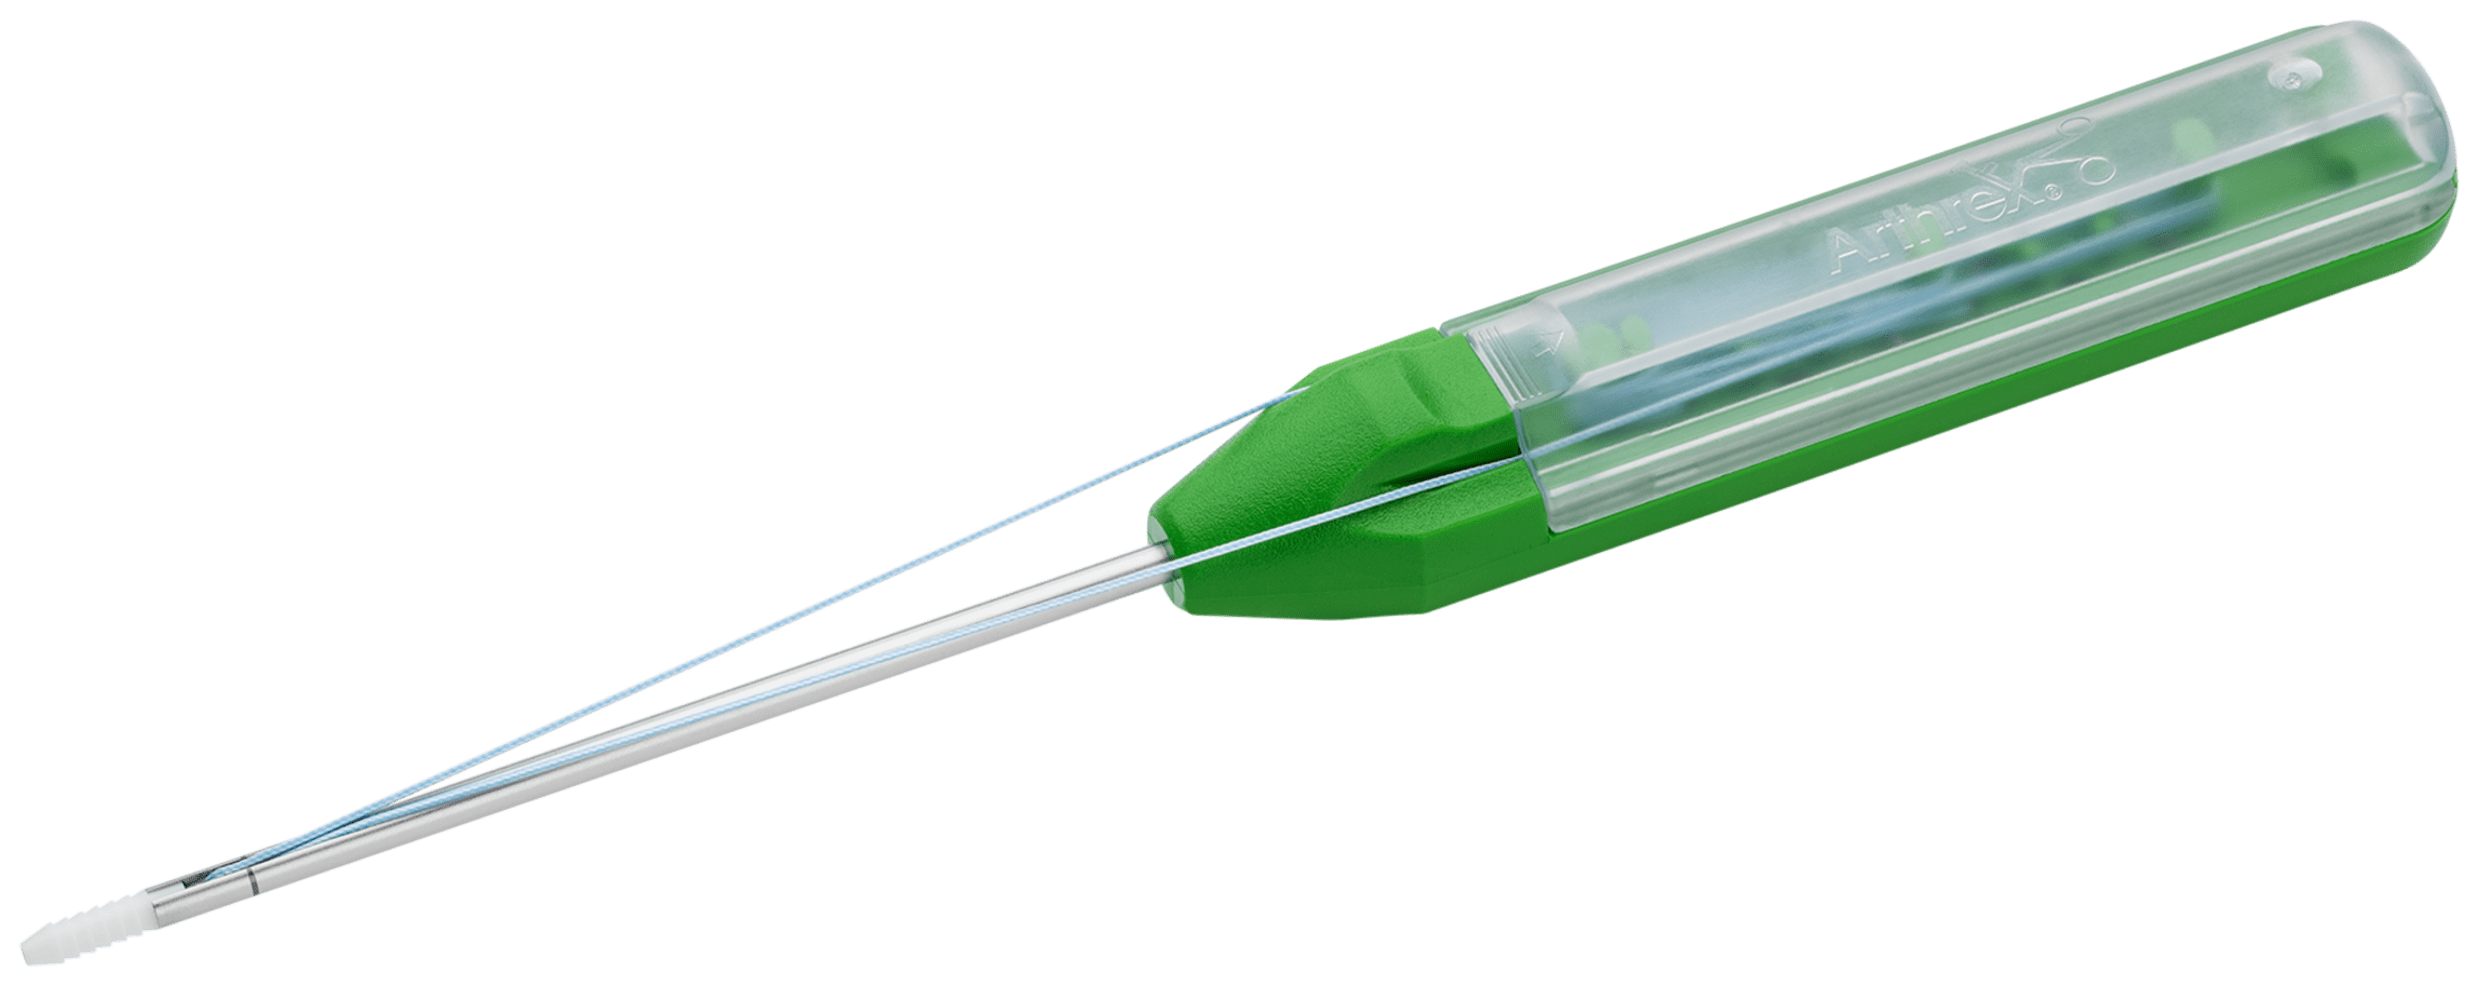 SJ BioComposite SutureTak Fadenanker mit Nadeln und 1x FiberWire #1, 3.0 mm, steril, IM